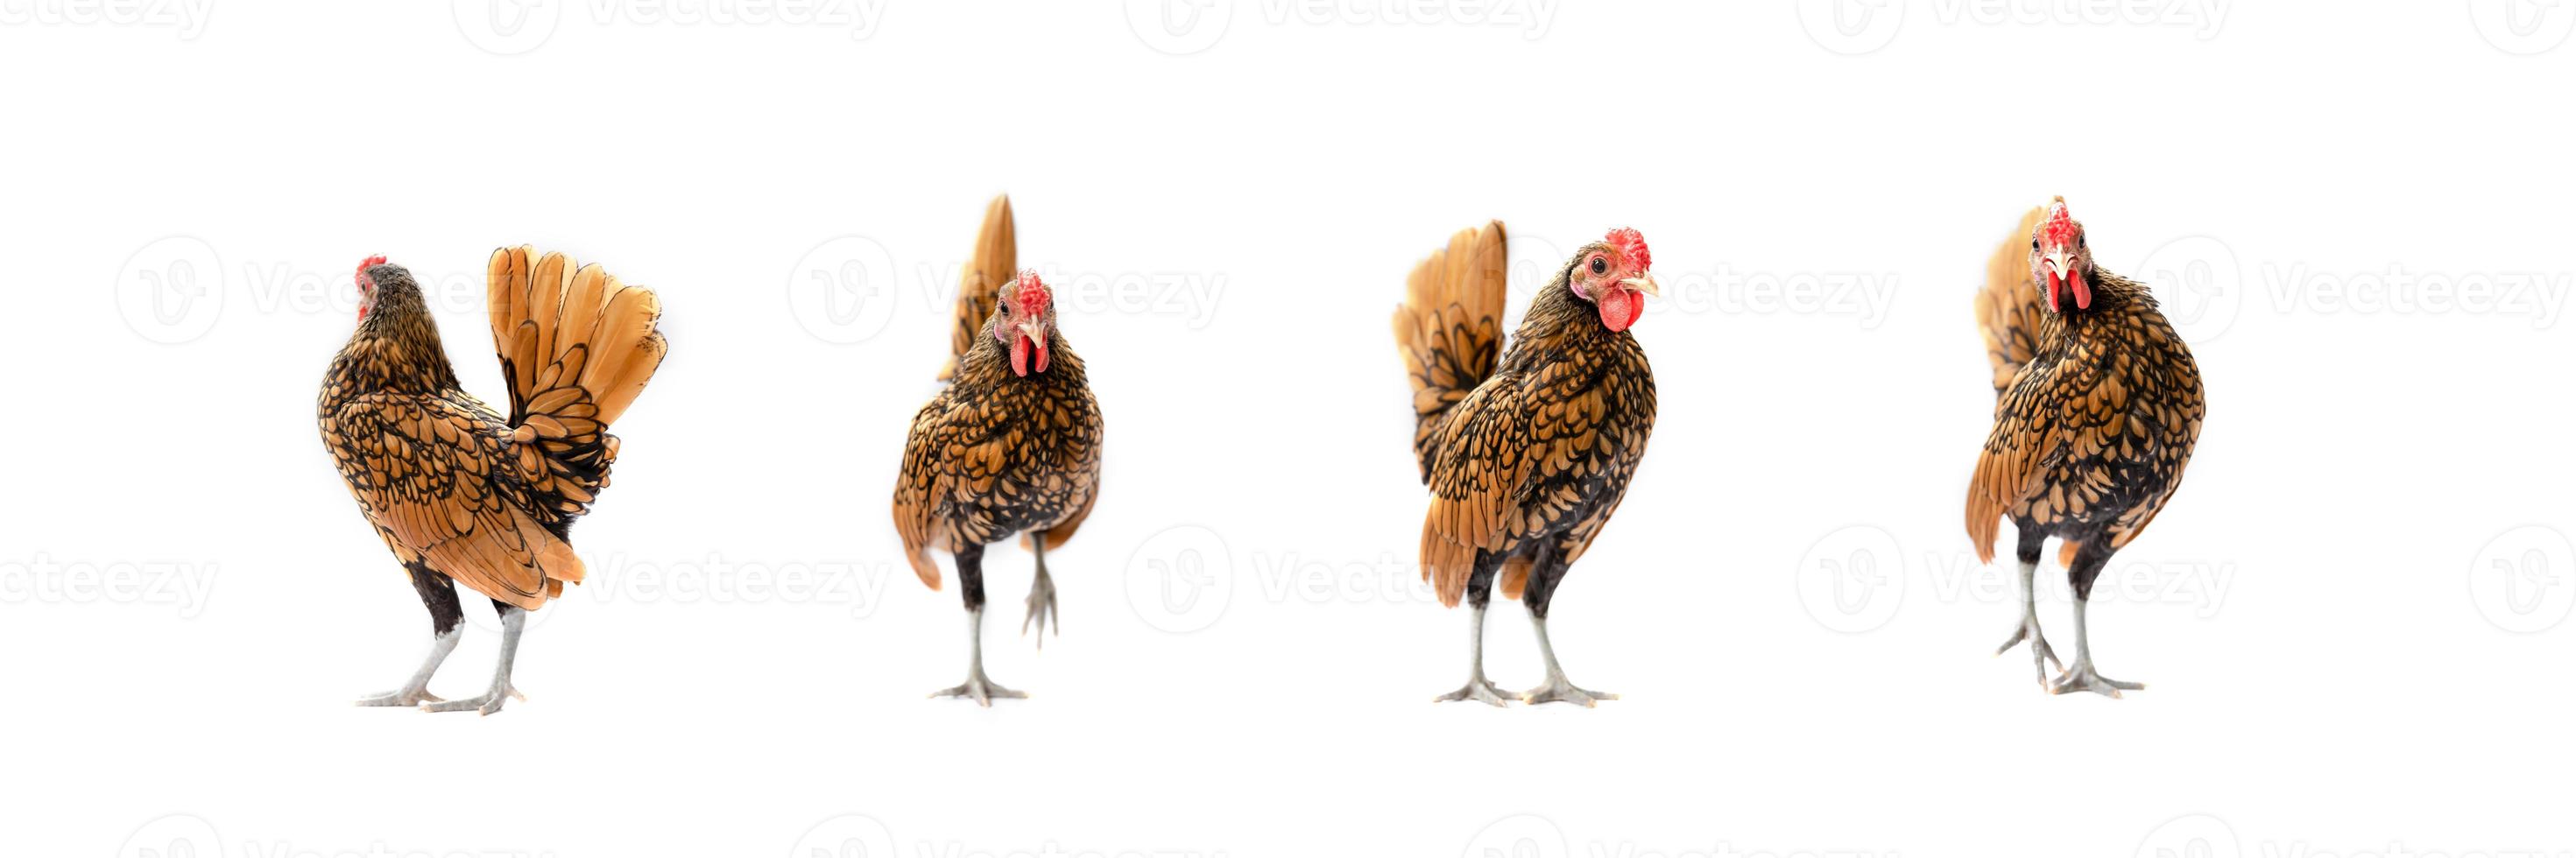 cuatro pollos sebright marrones aislados en el fondo blanco en studiolight foto